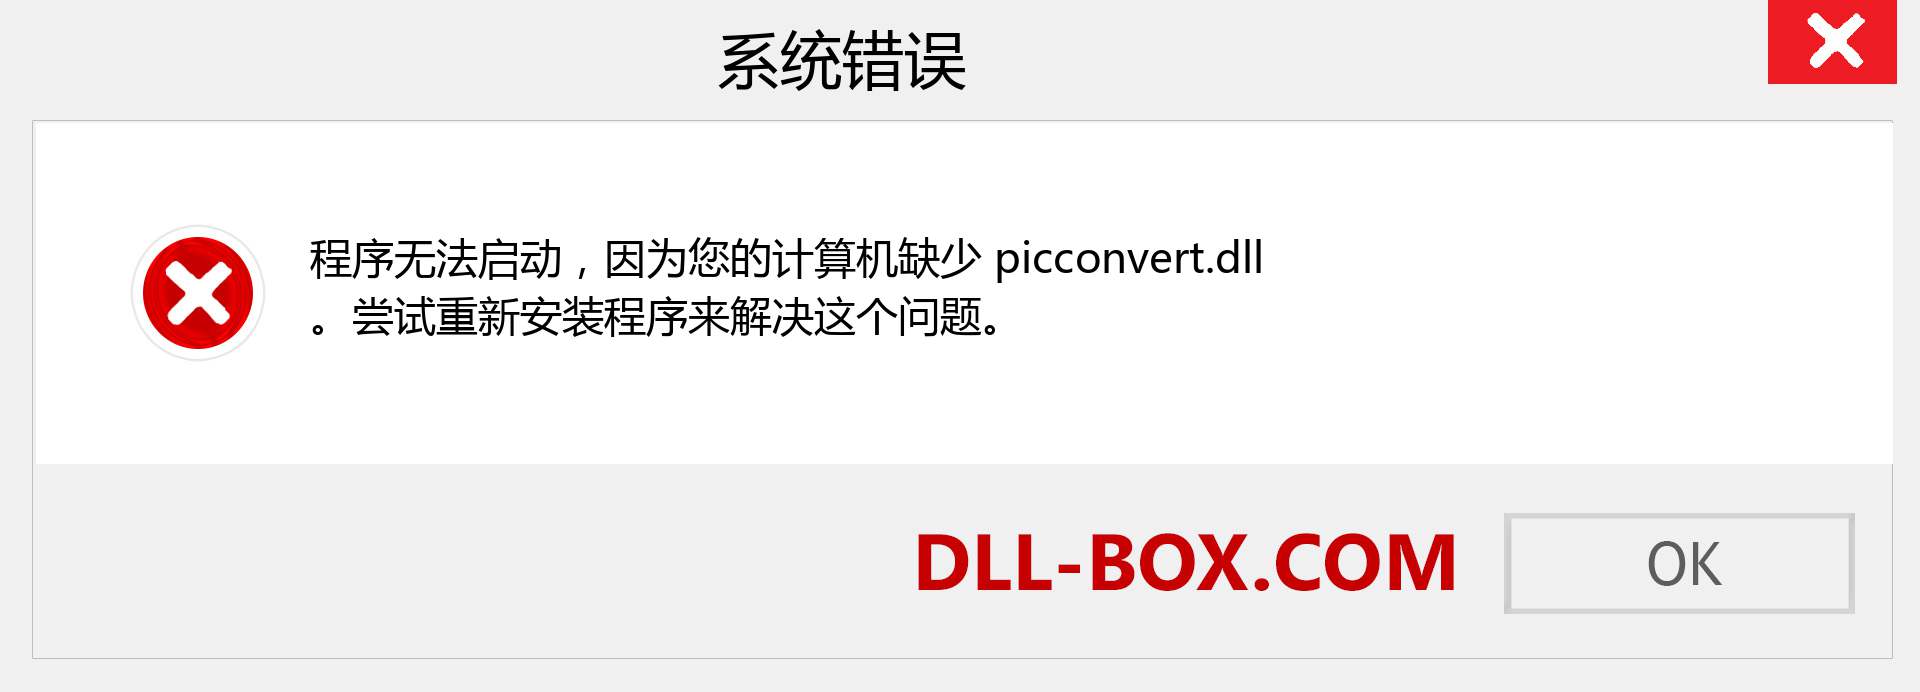 picconvert.dll 文件丢失？。 适用于 Windows 7、8、10 的下载 - 修复 Windows、照片、图像上的 picconvert dll 丢失错误